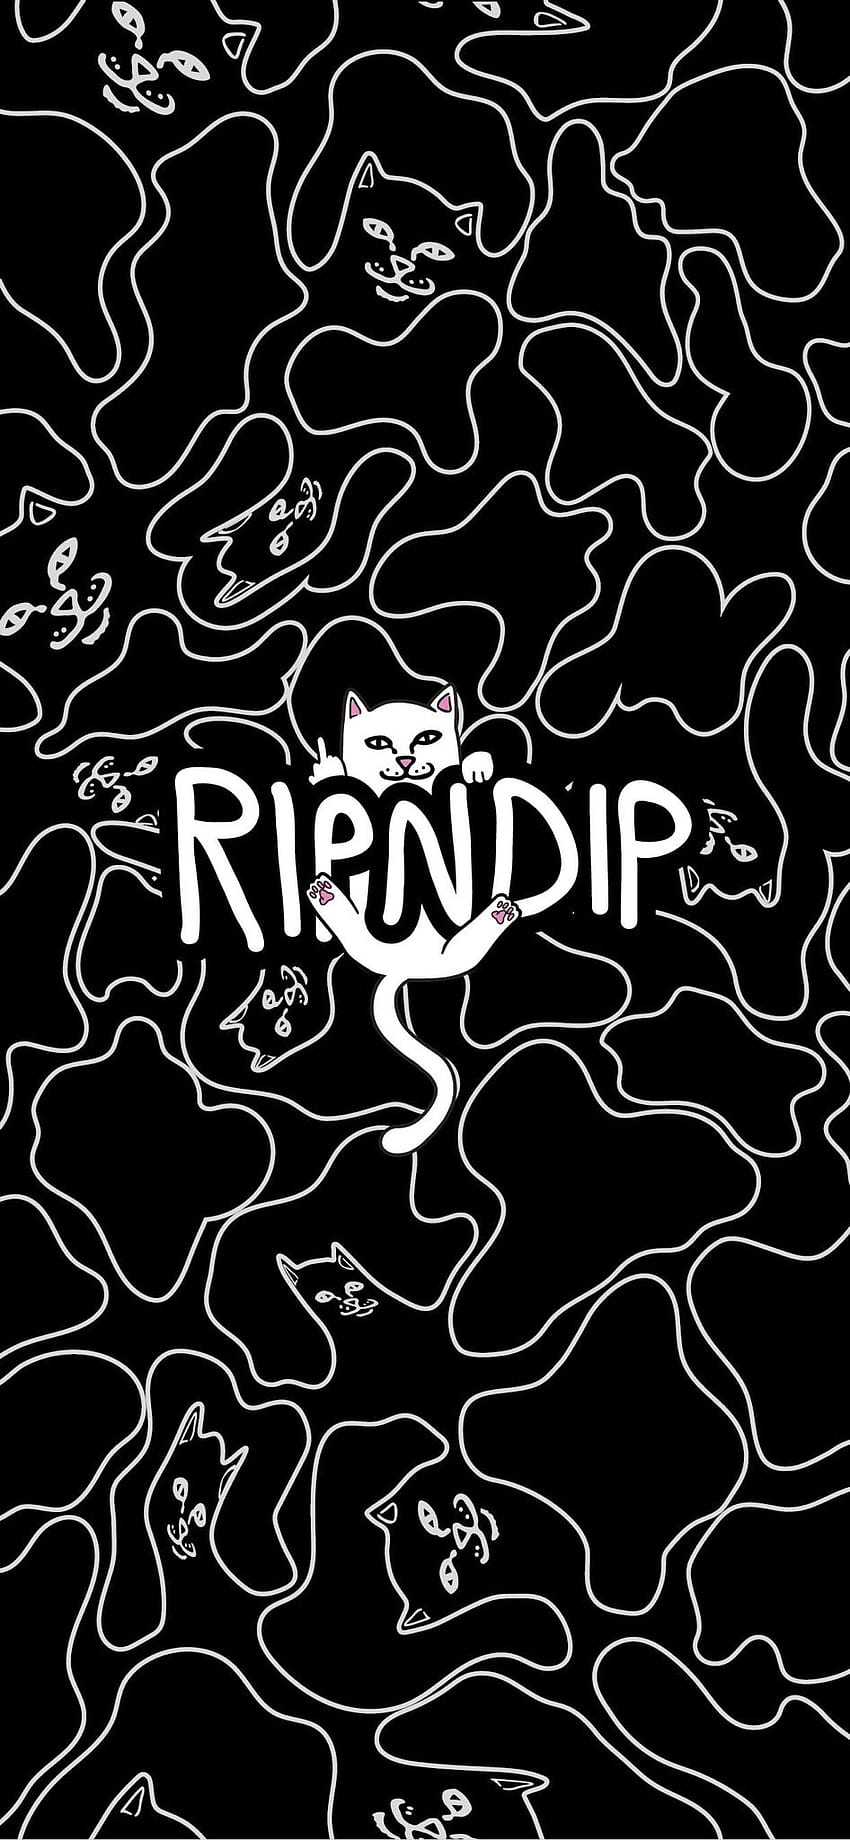 RipNDip HD phone wallpaper